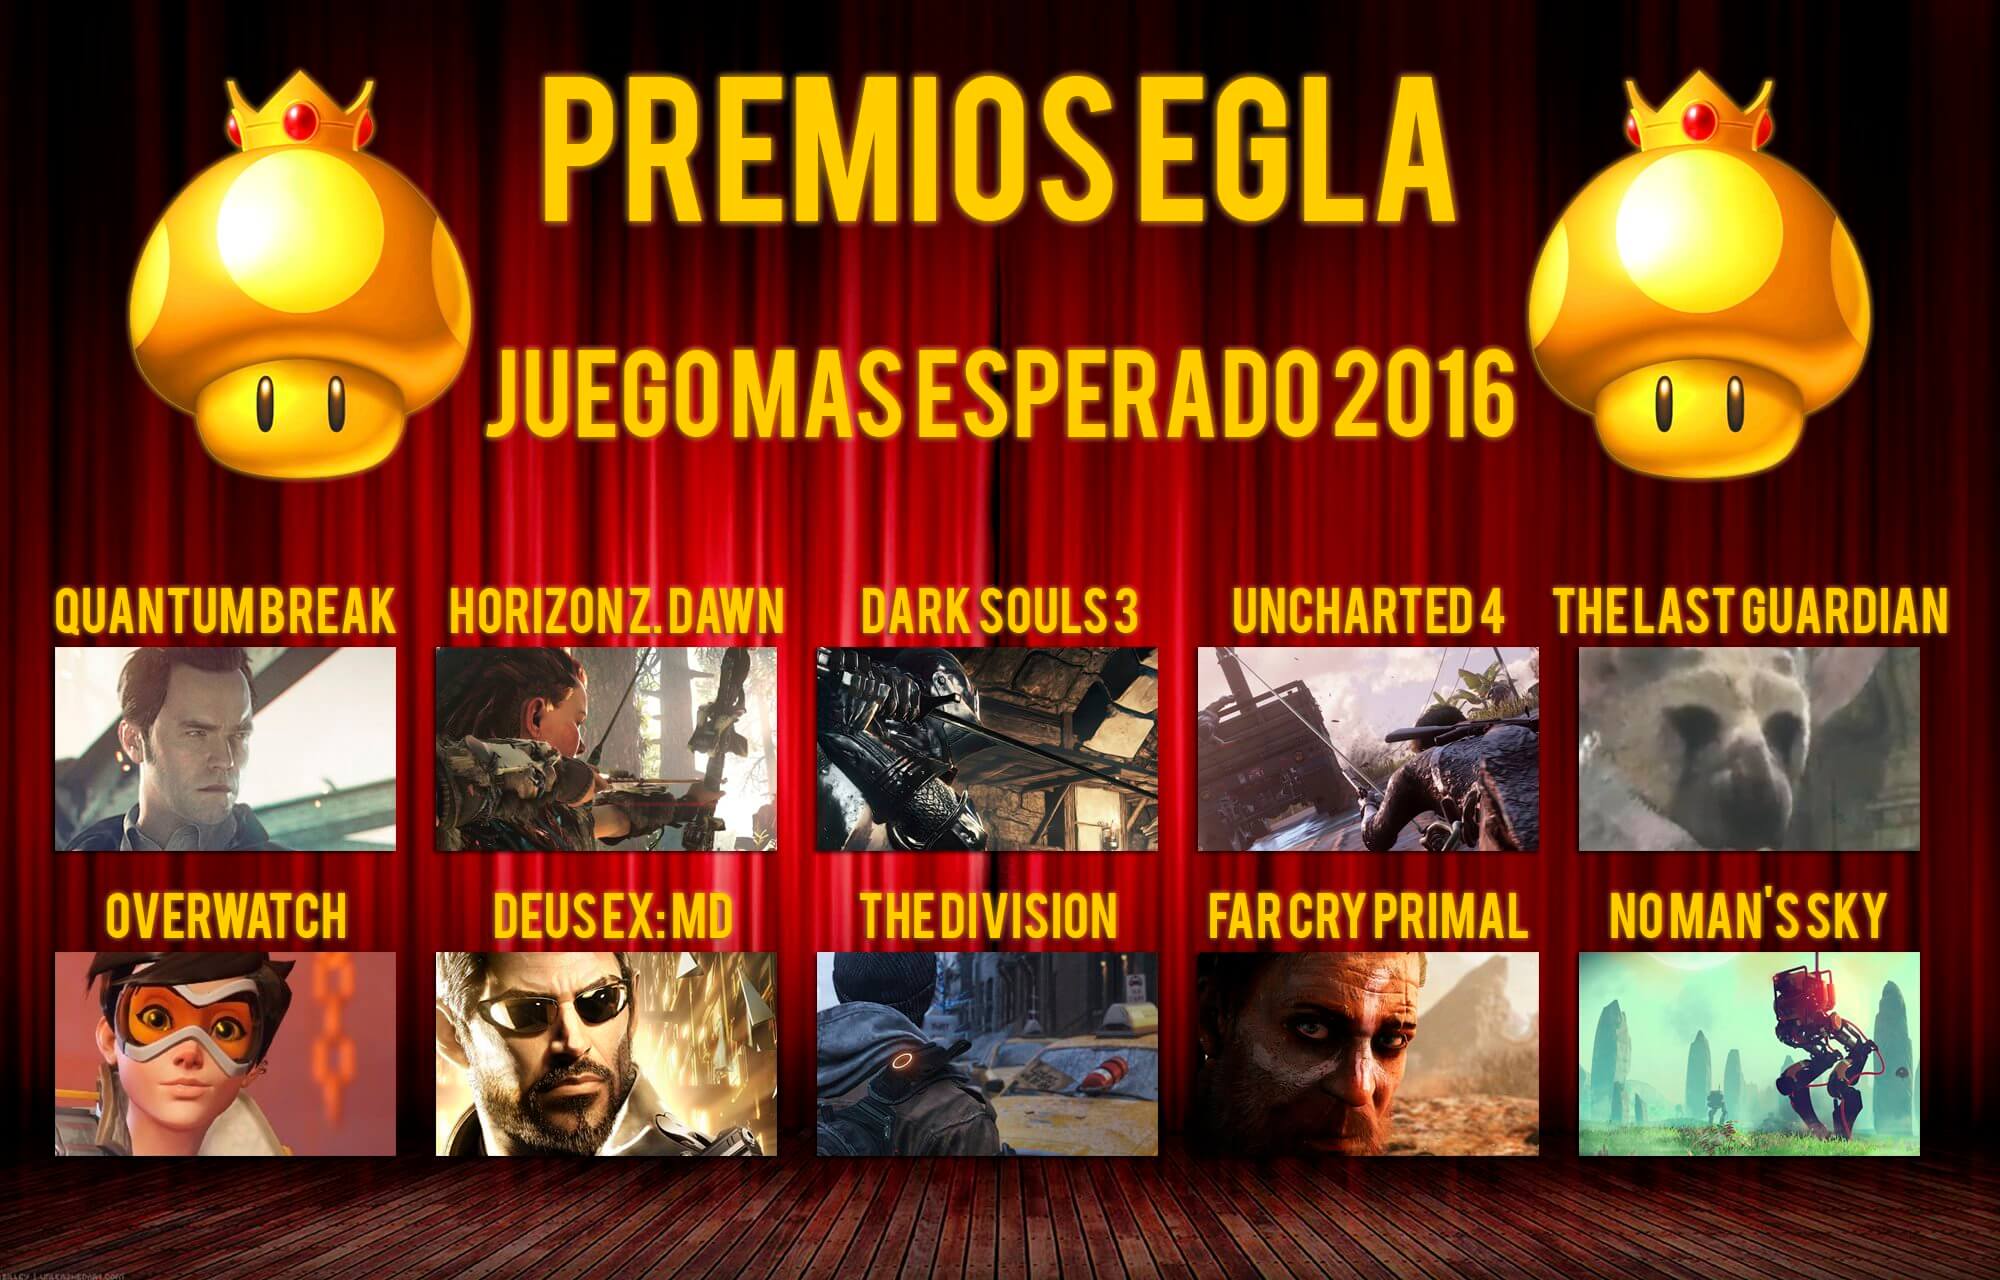 Premios EGLA 2015 Juego más esperado del 2016